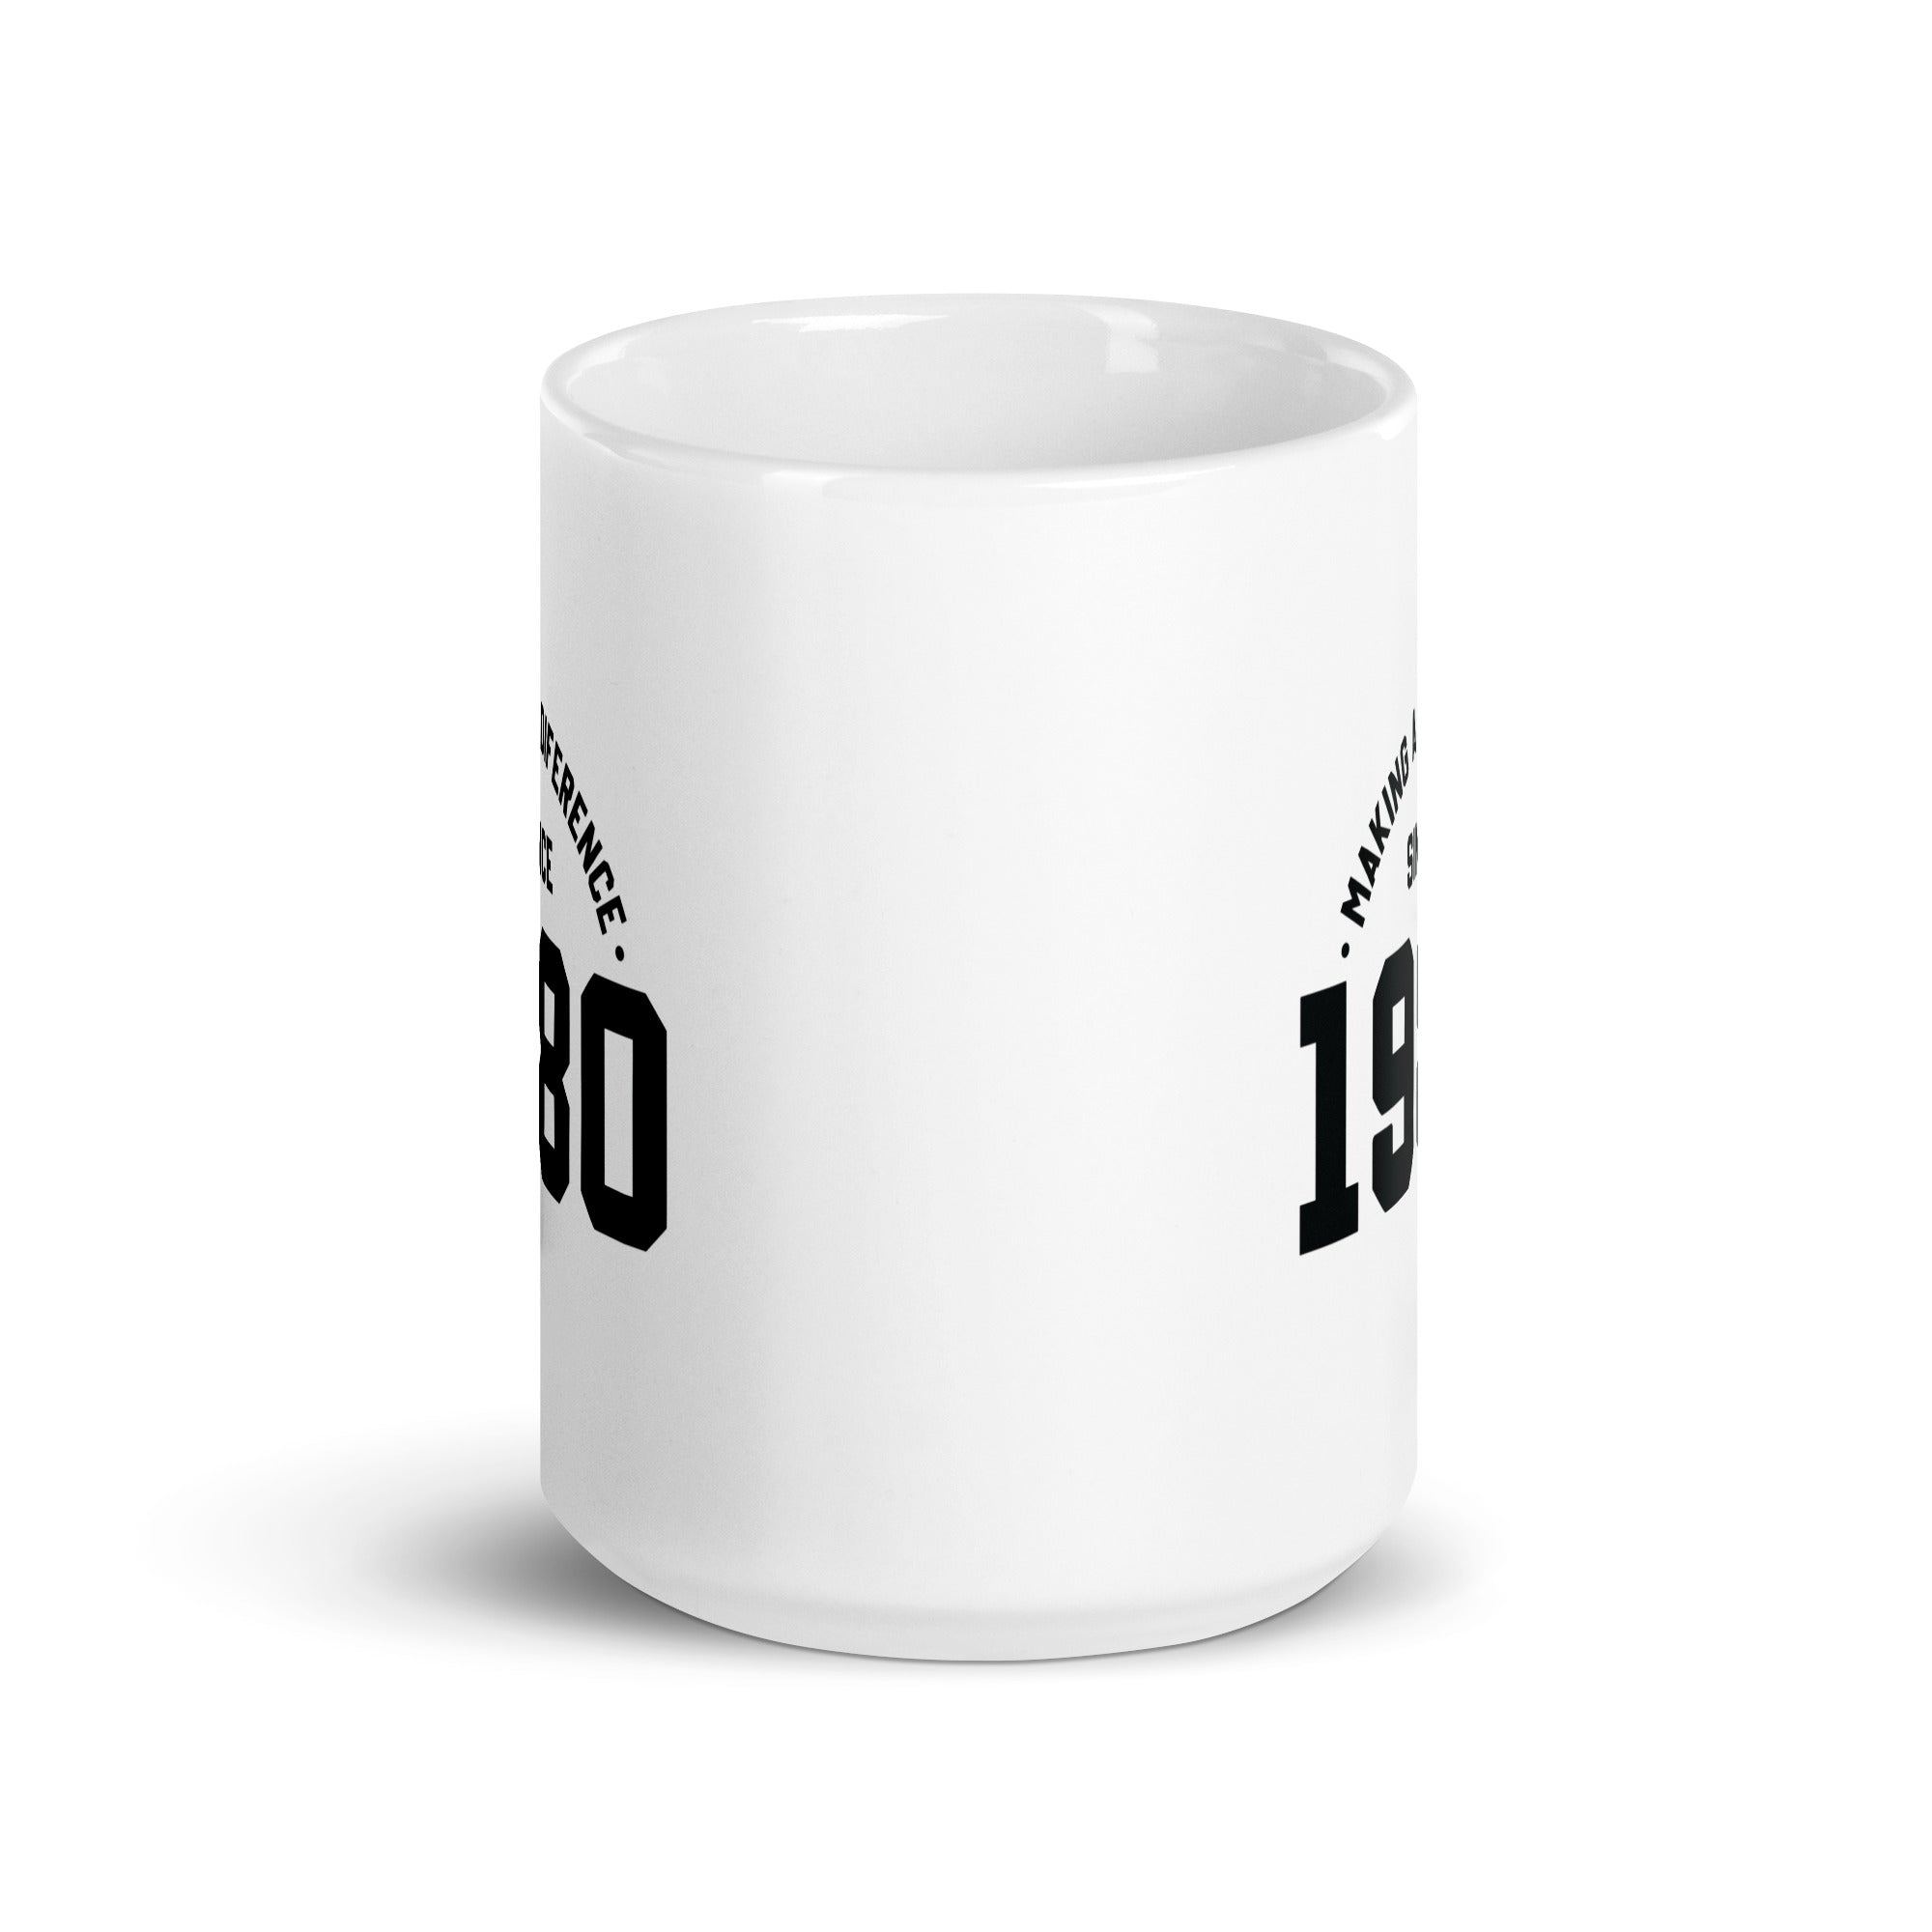 White glossy mug | Making a diference since 1980